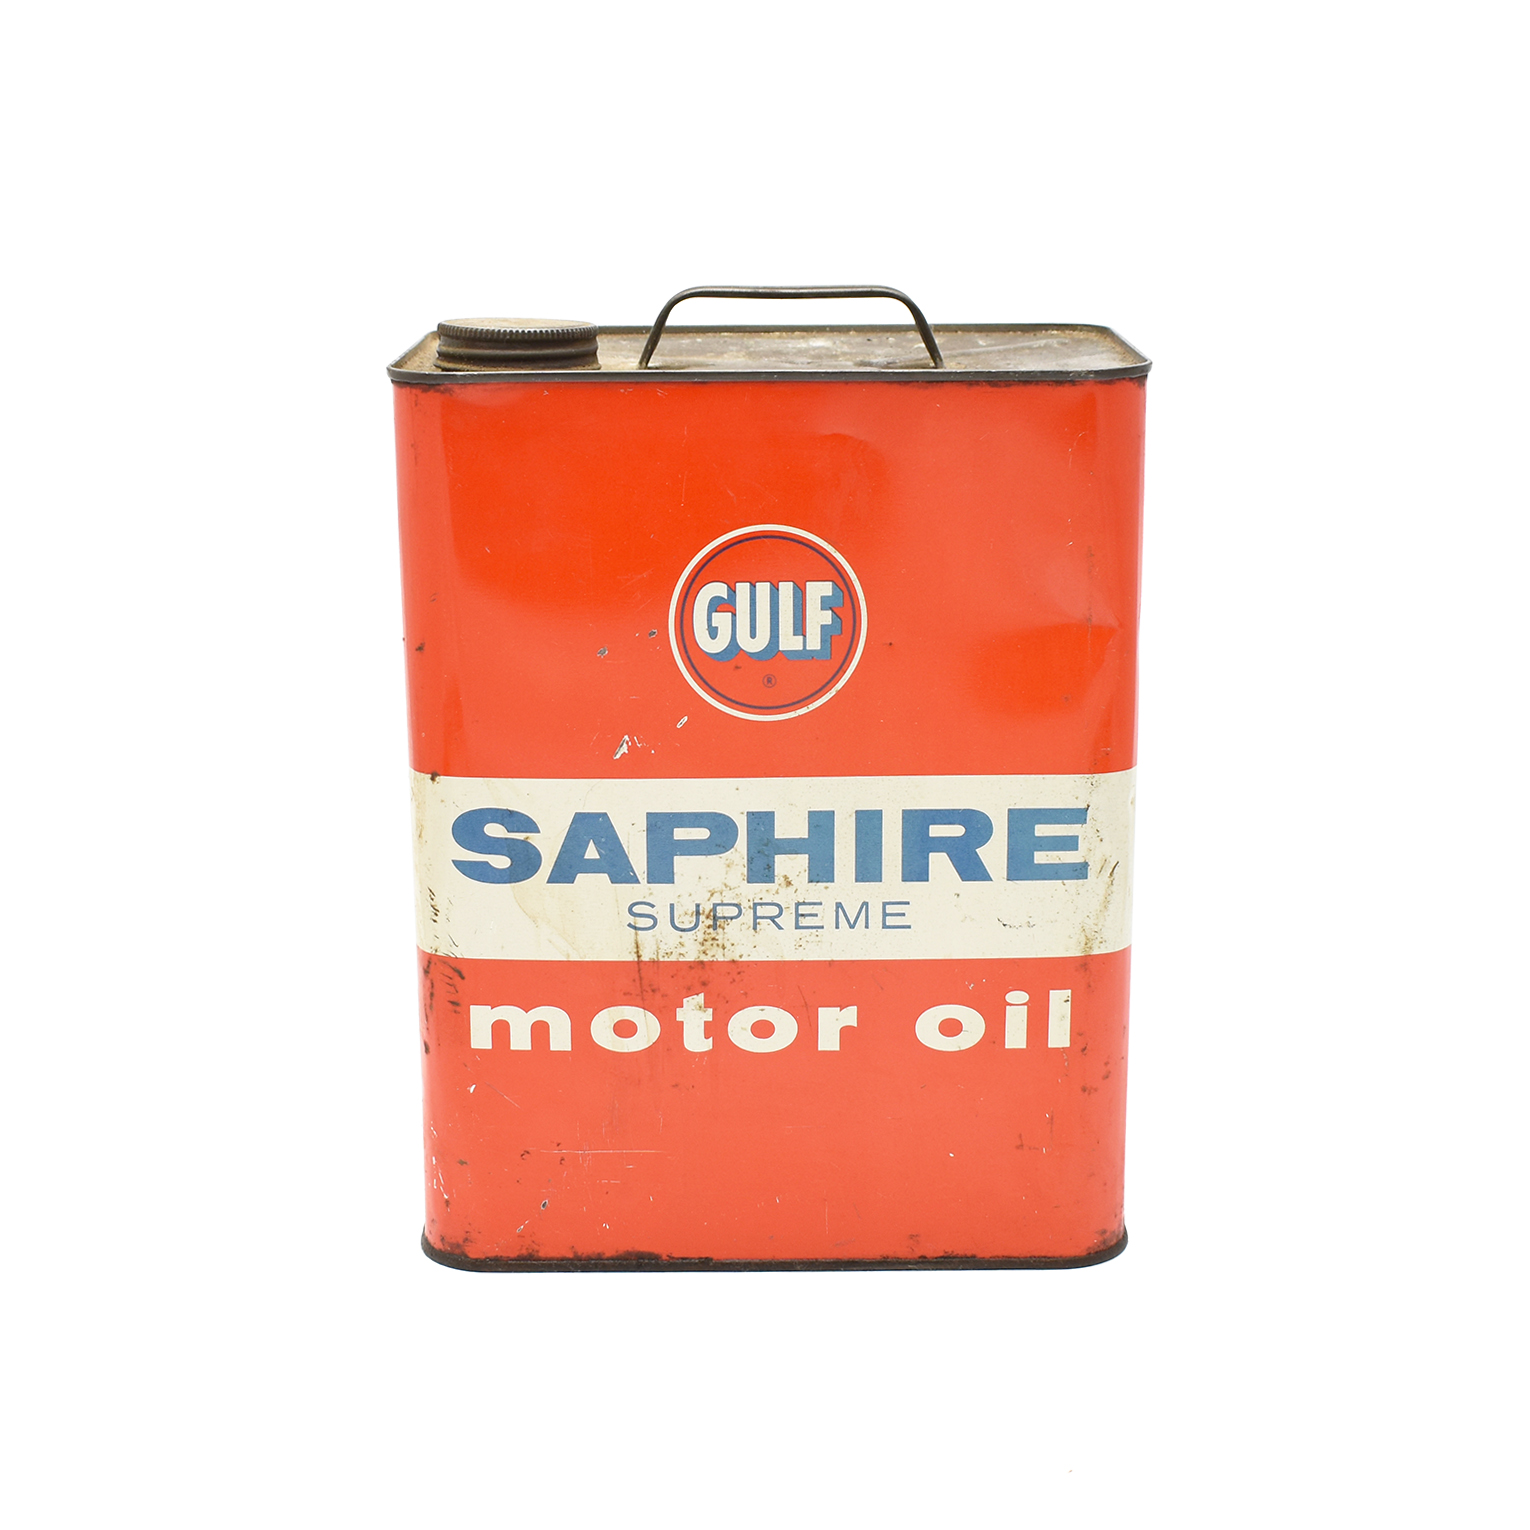 オイル缶 / Gulf SAPHIRE SUPREME motor oilイメージ0